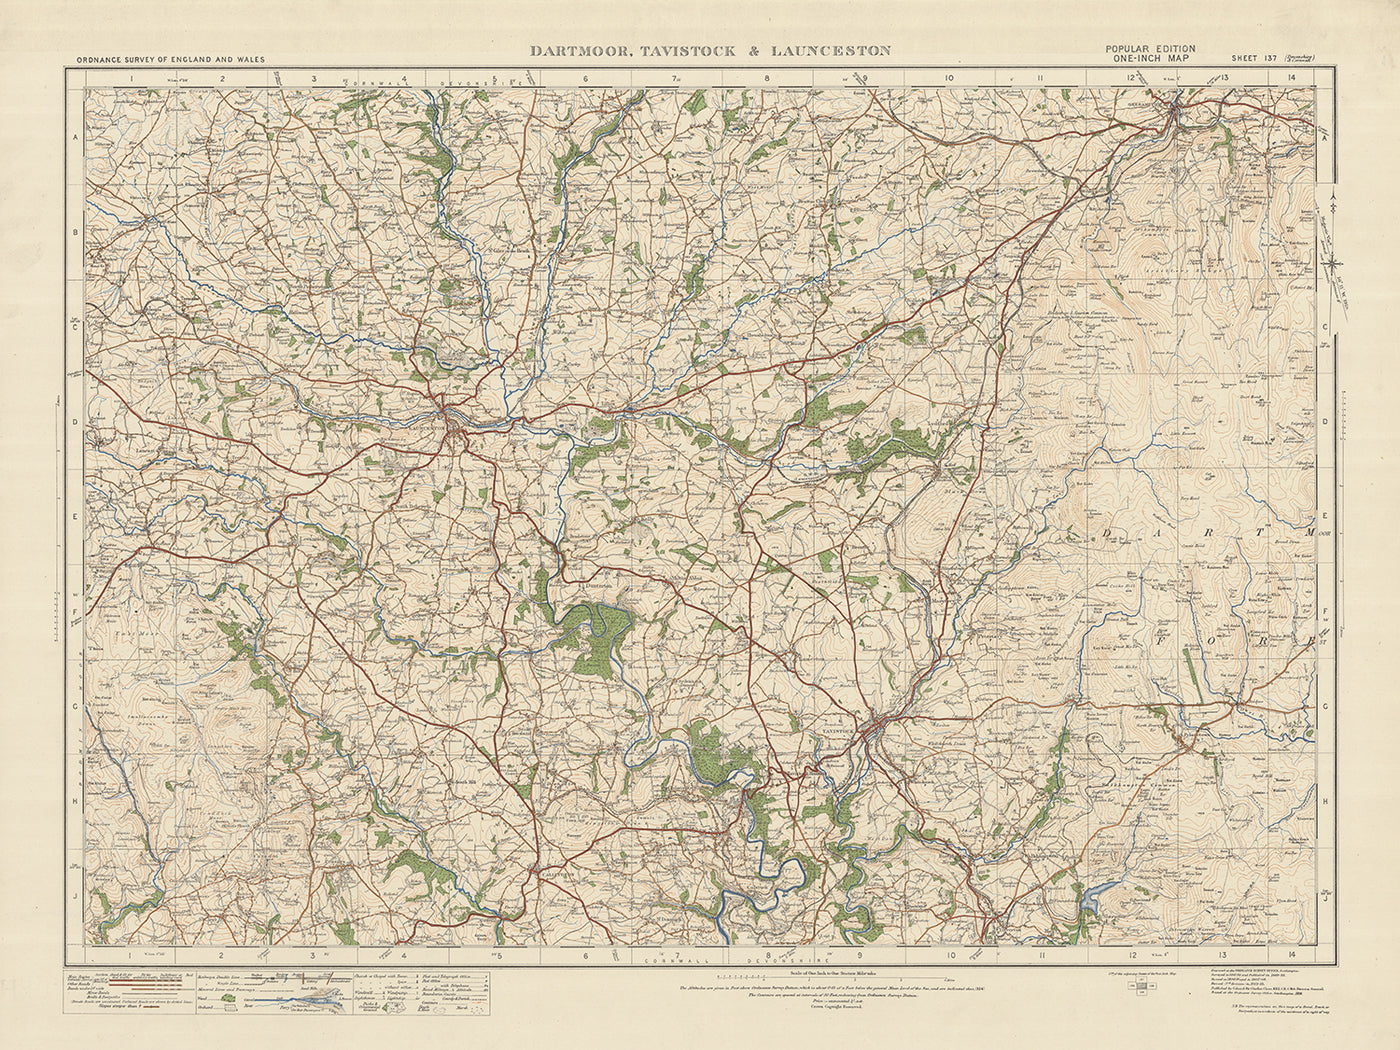 Carte Old Ordnance Survey, feuille 137 - Dartmoor, Tavistock et Launceston, 1925 : Okehampton, Callington, Gunnislake, Yelverton, Tamar Valley AONB